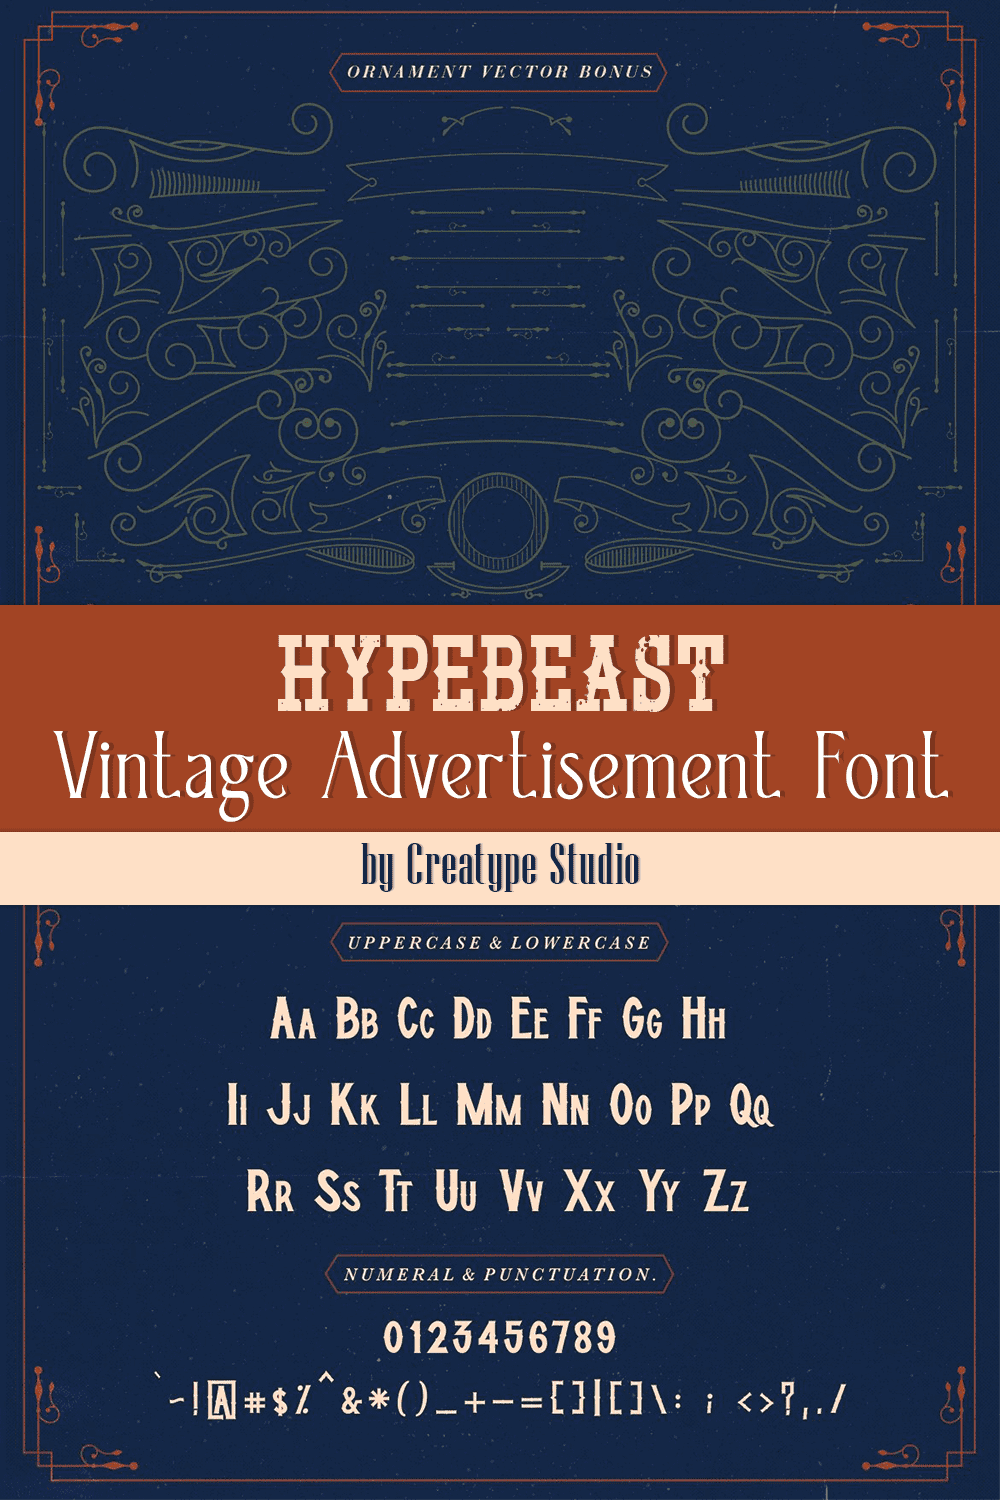 hypebeast vintage advertisement font pinterest 696